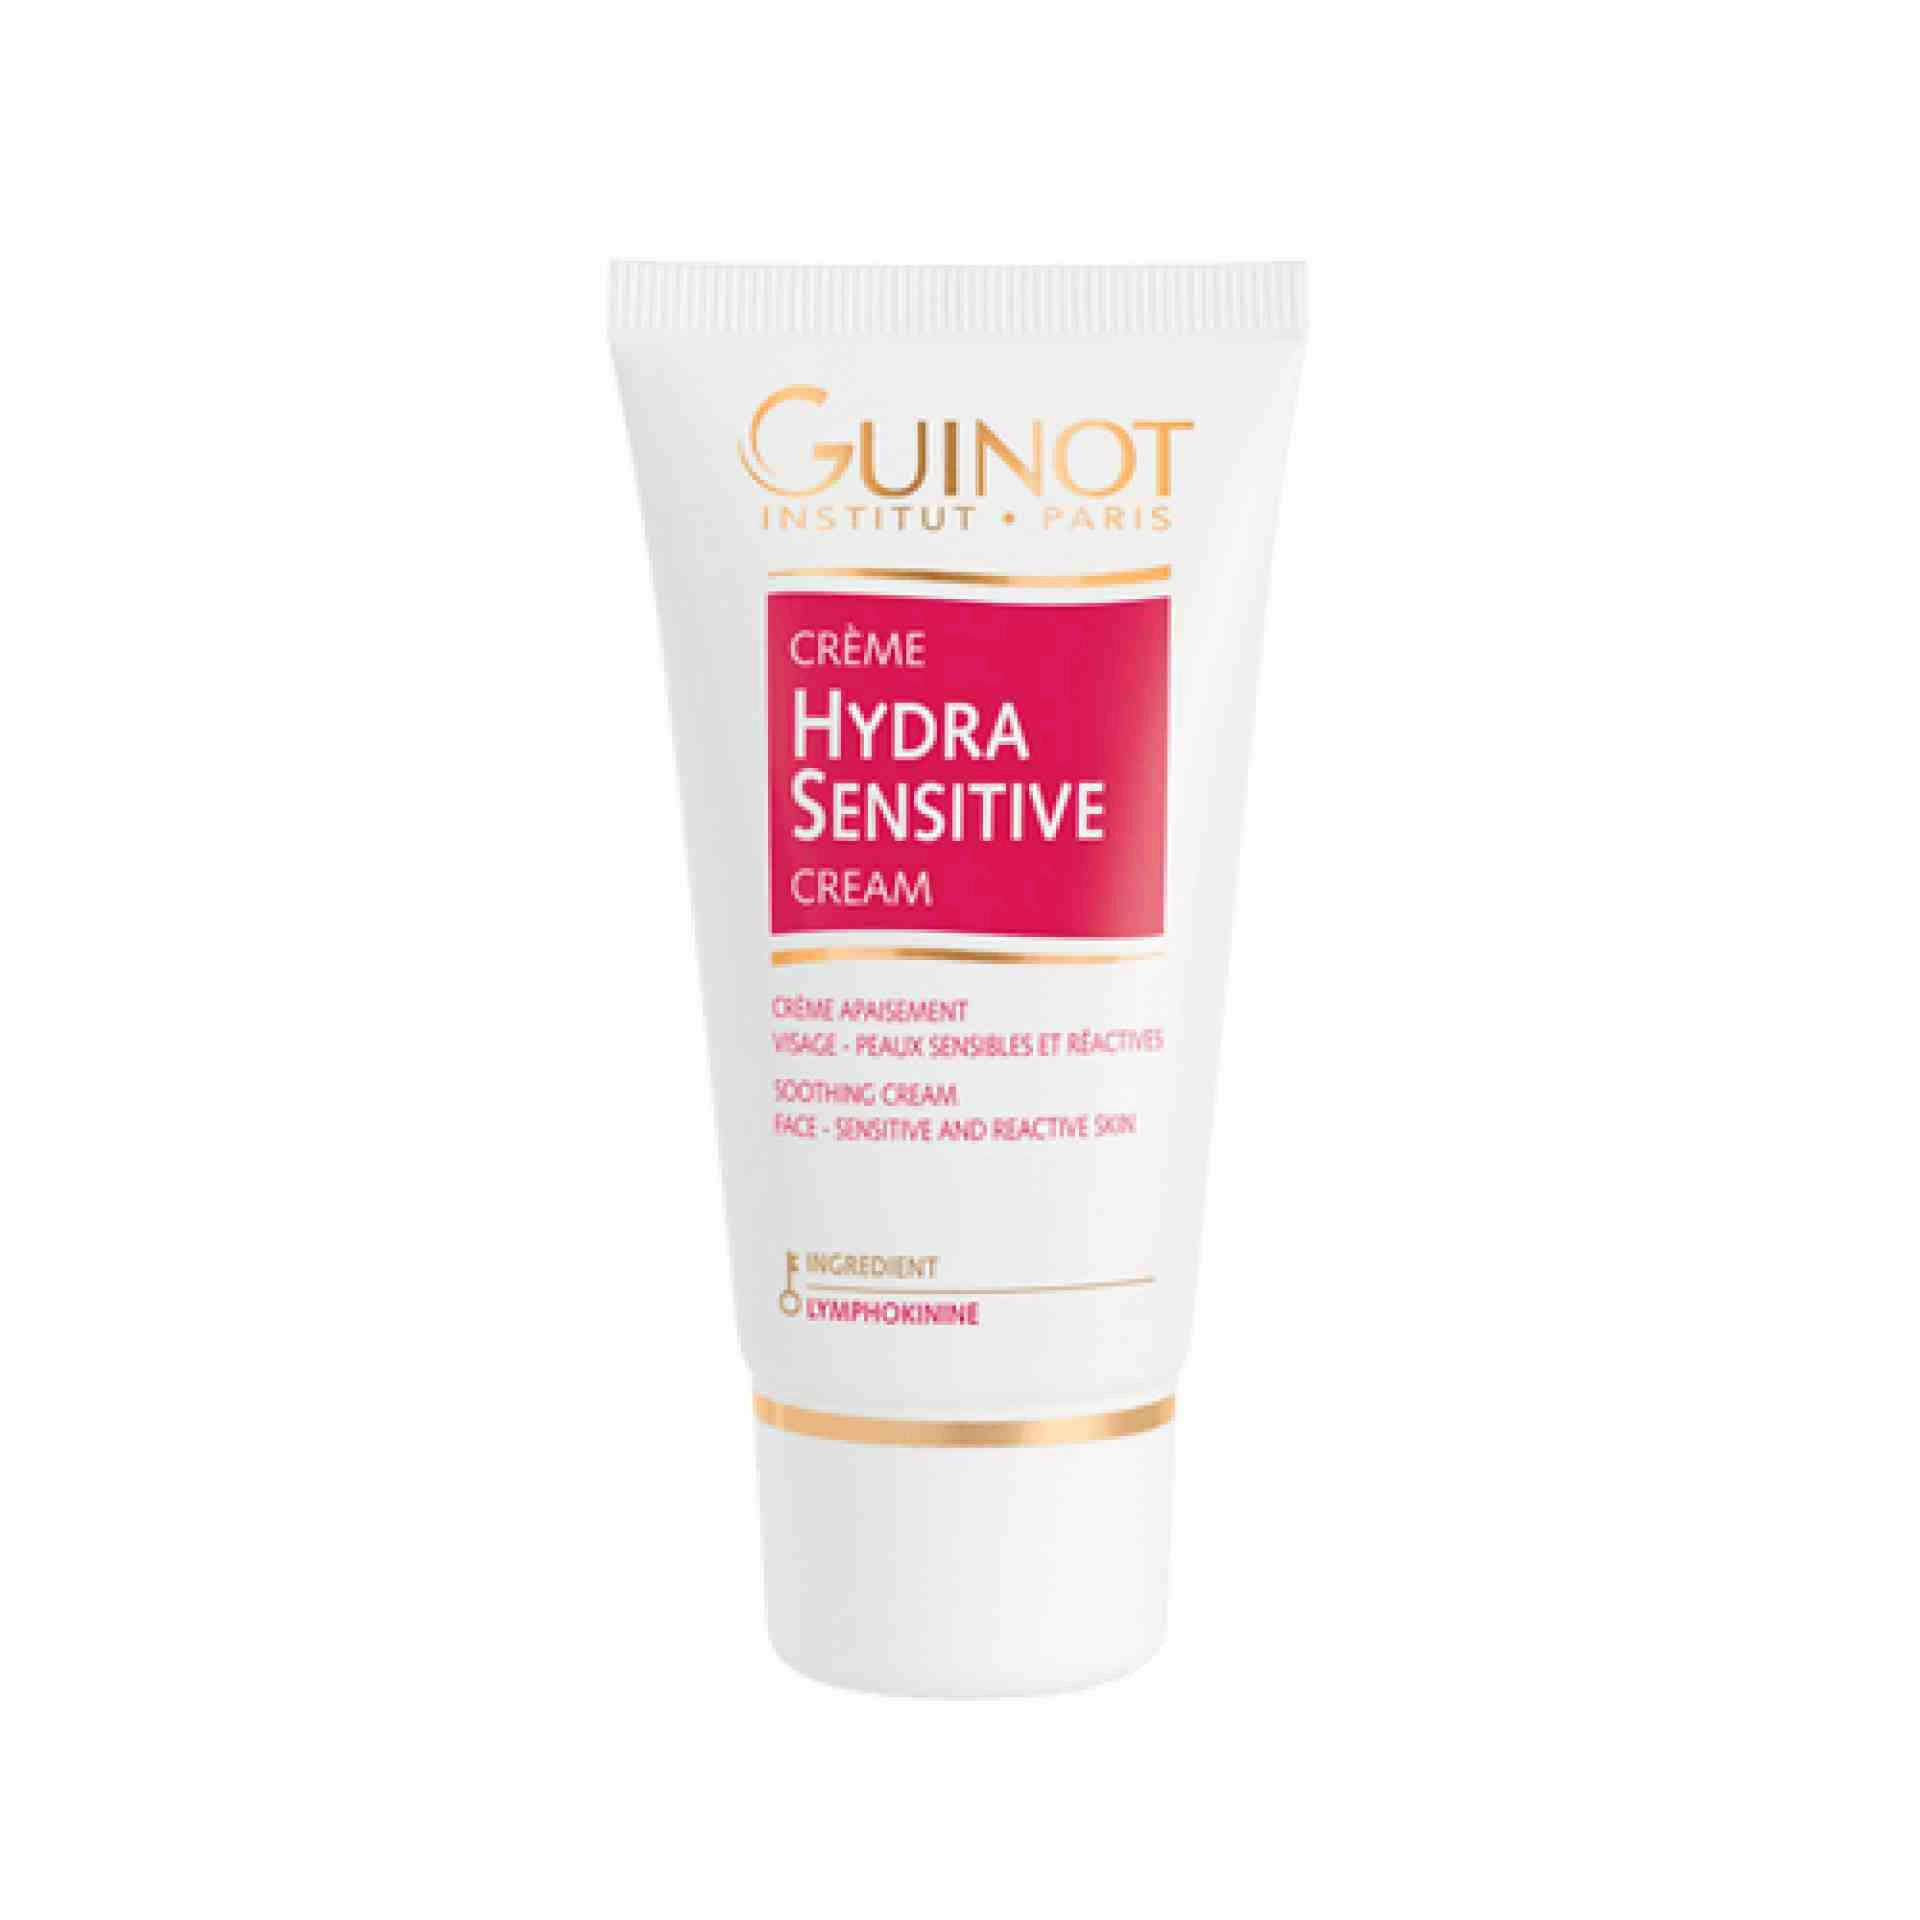 Crème Hydra Sensitive | Crema Reparadora 50ml - Guinot ®